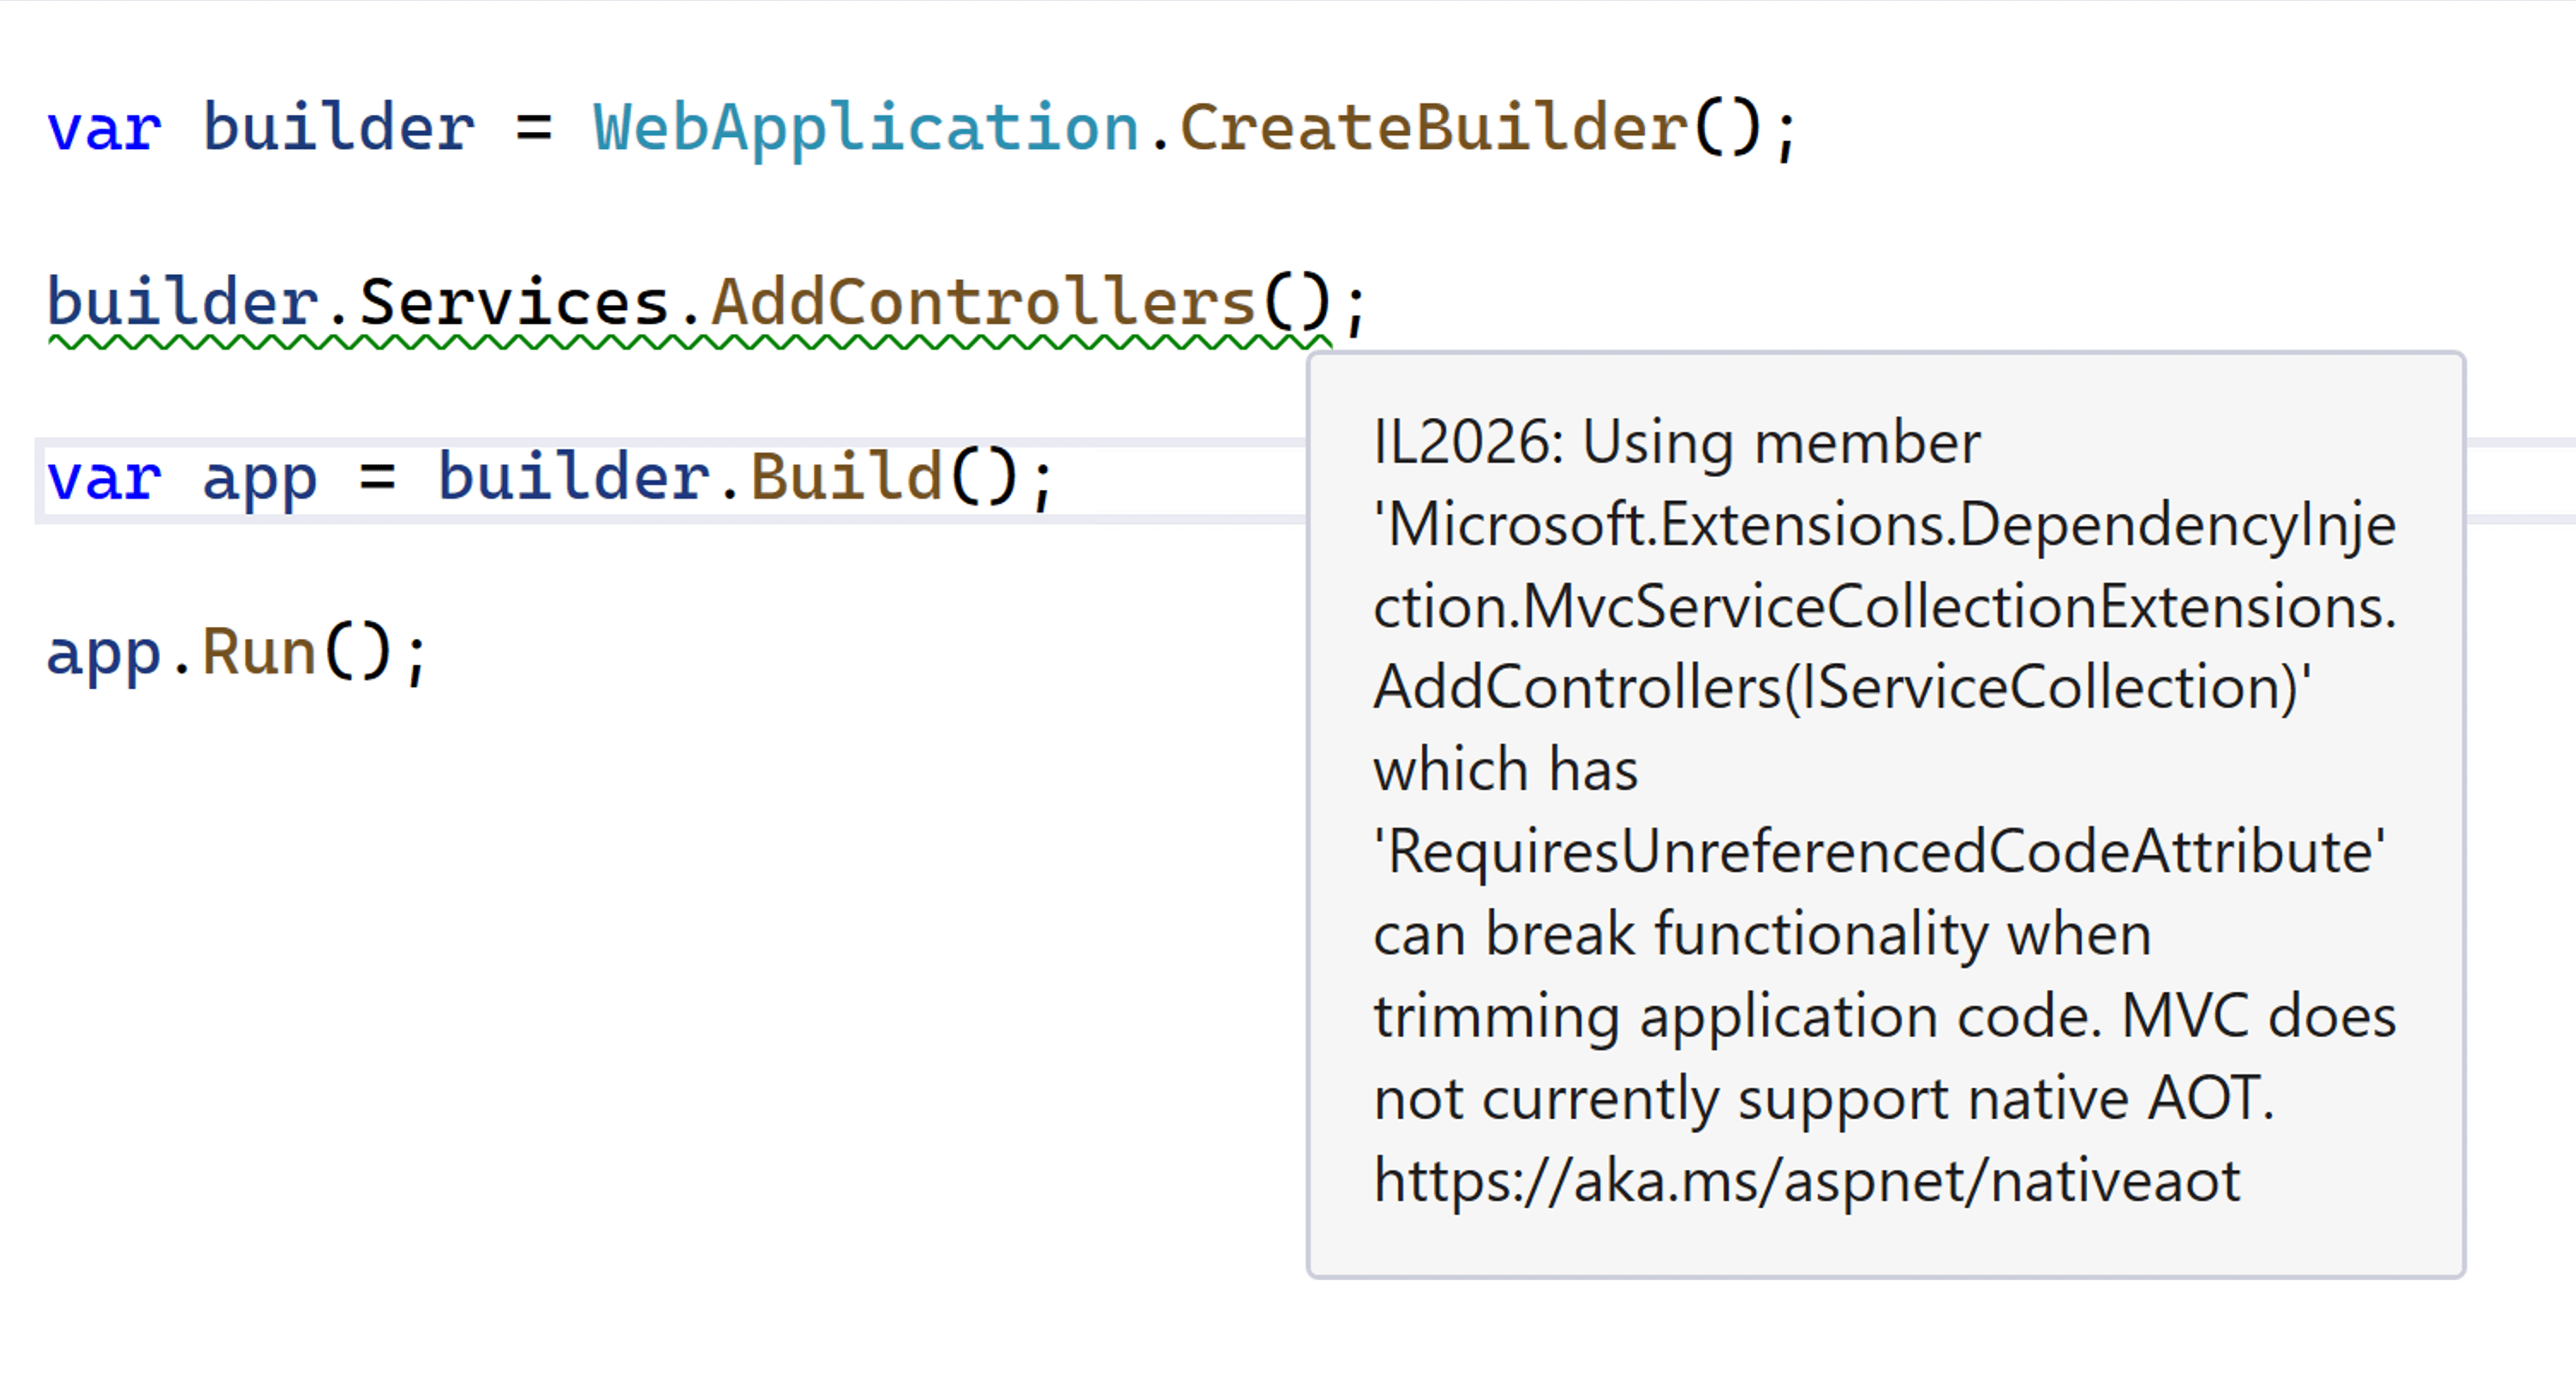 Okno sady Visual Studio s upozorněním IL2026 v metodě AddControllers, která říká, že MVC v současné době nepodporuje nativní AOT.